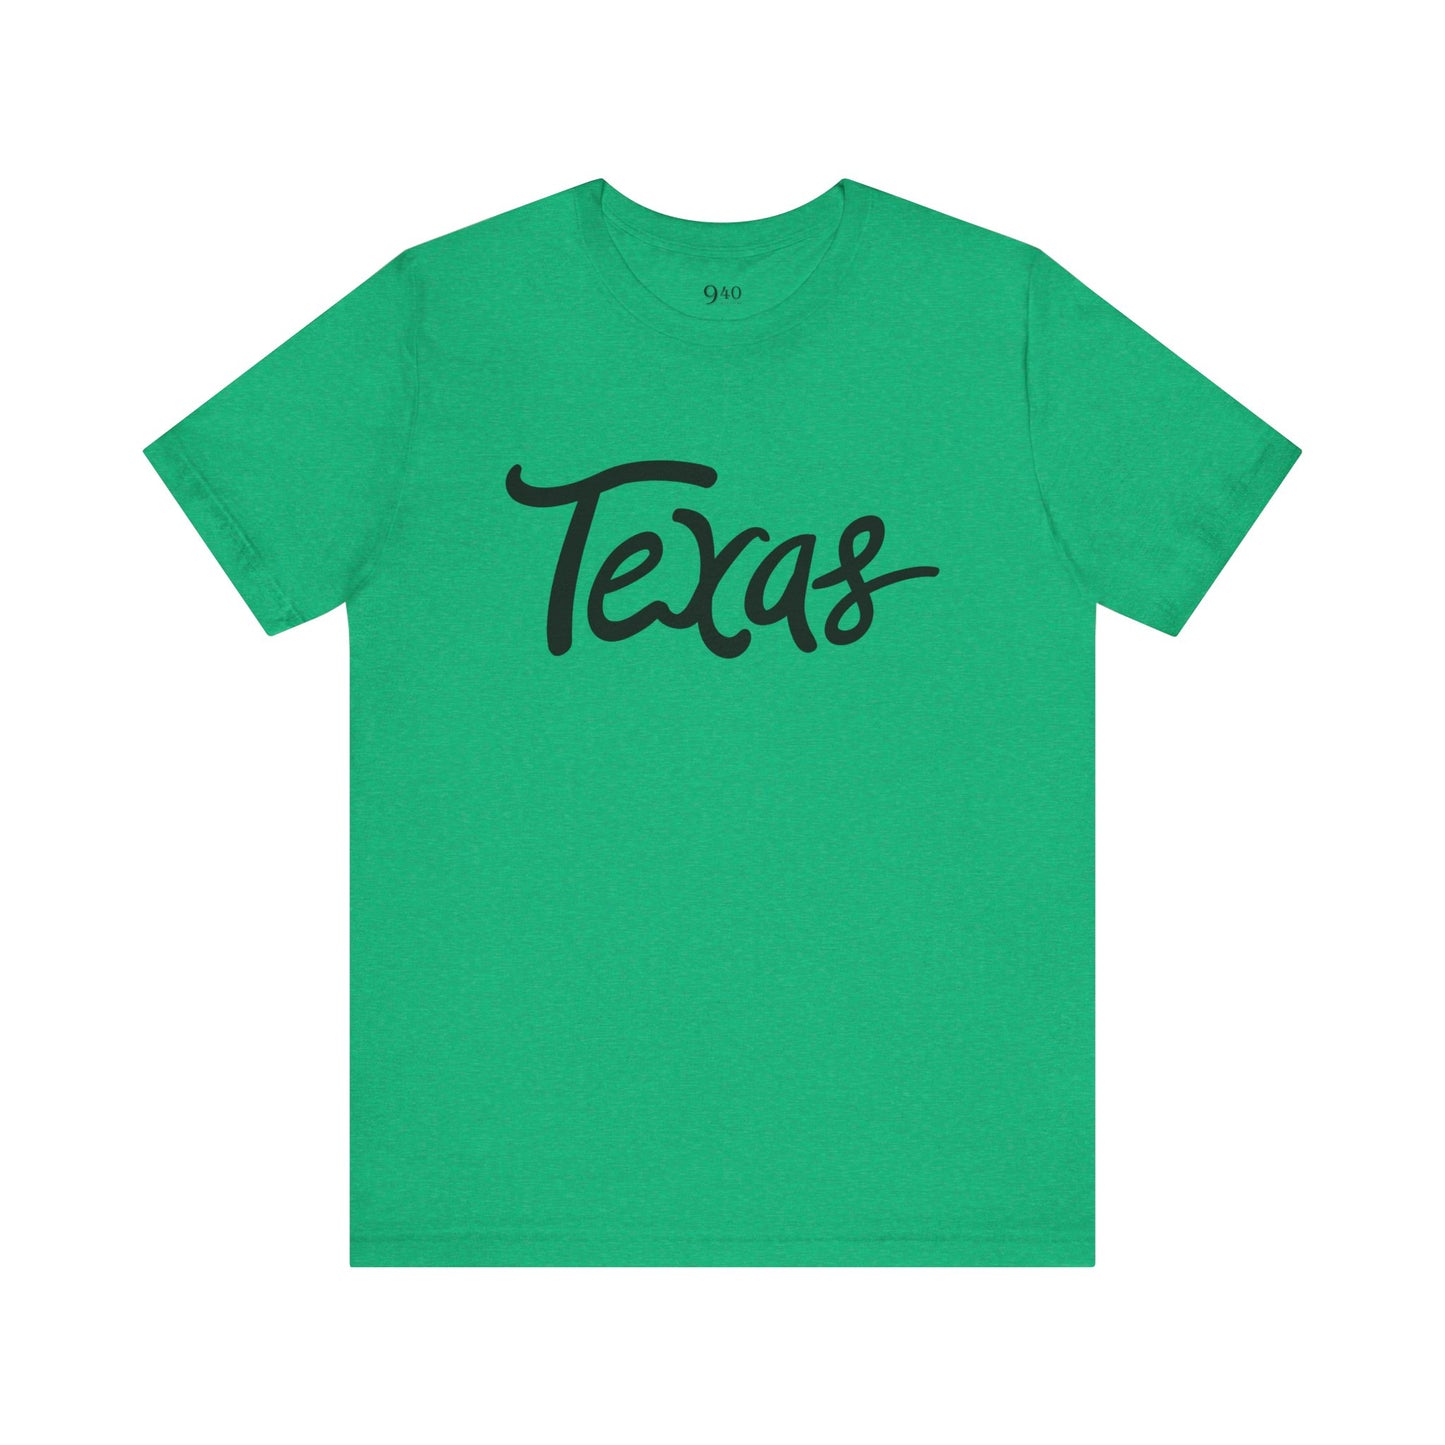 Camiseta unisex de Texas